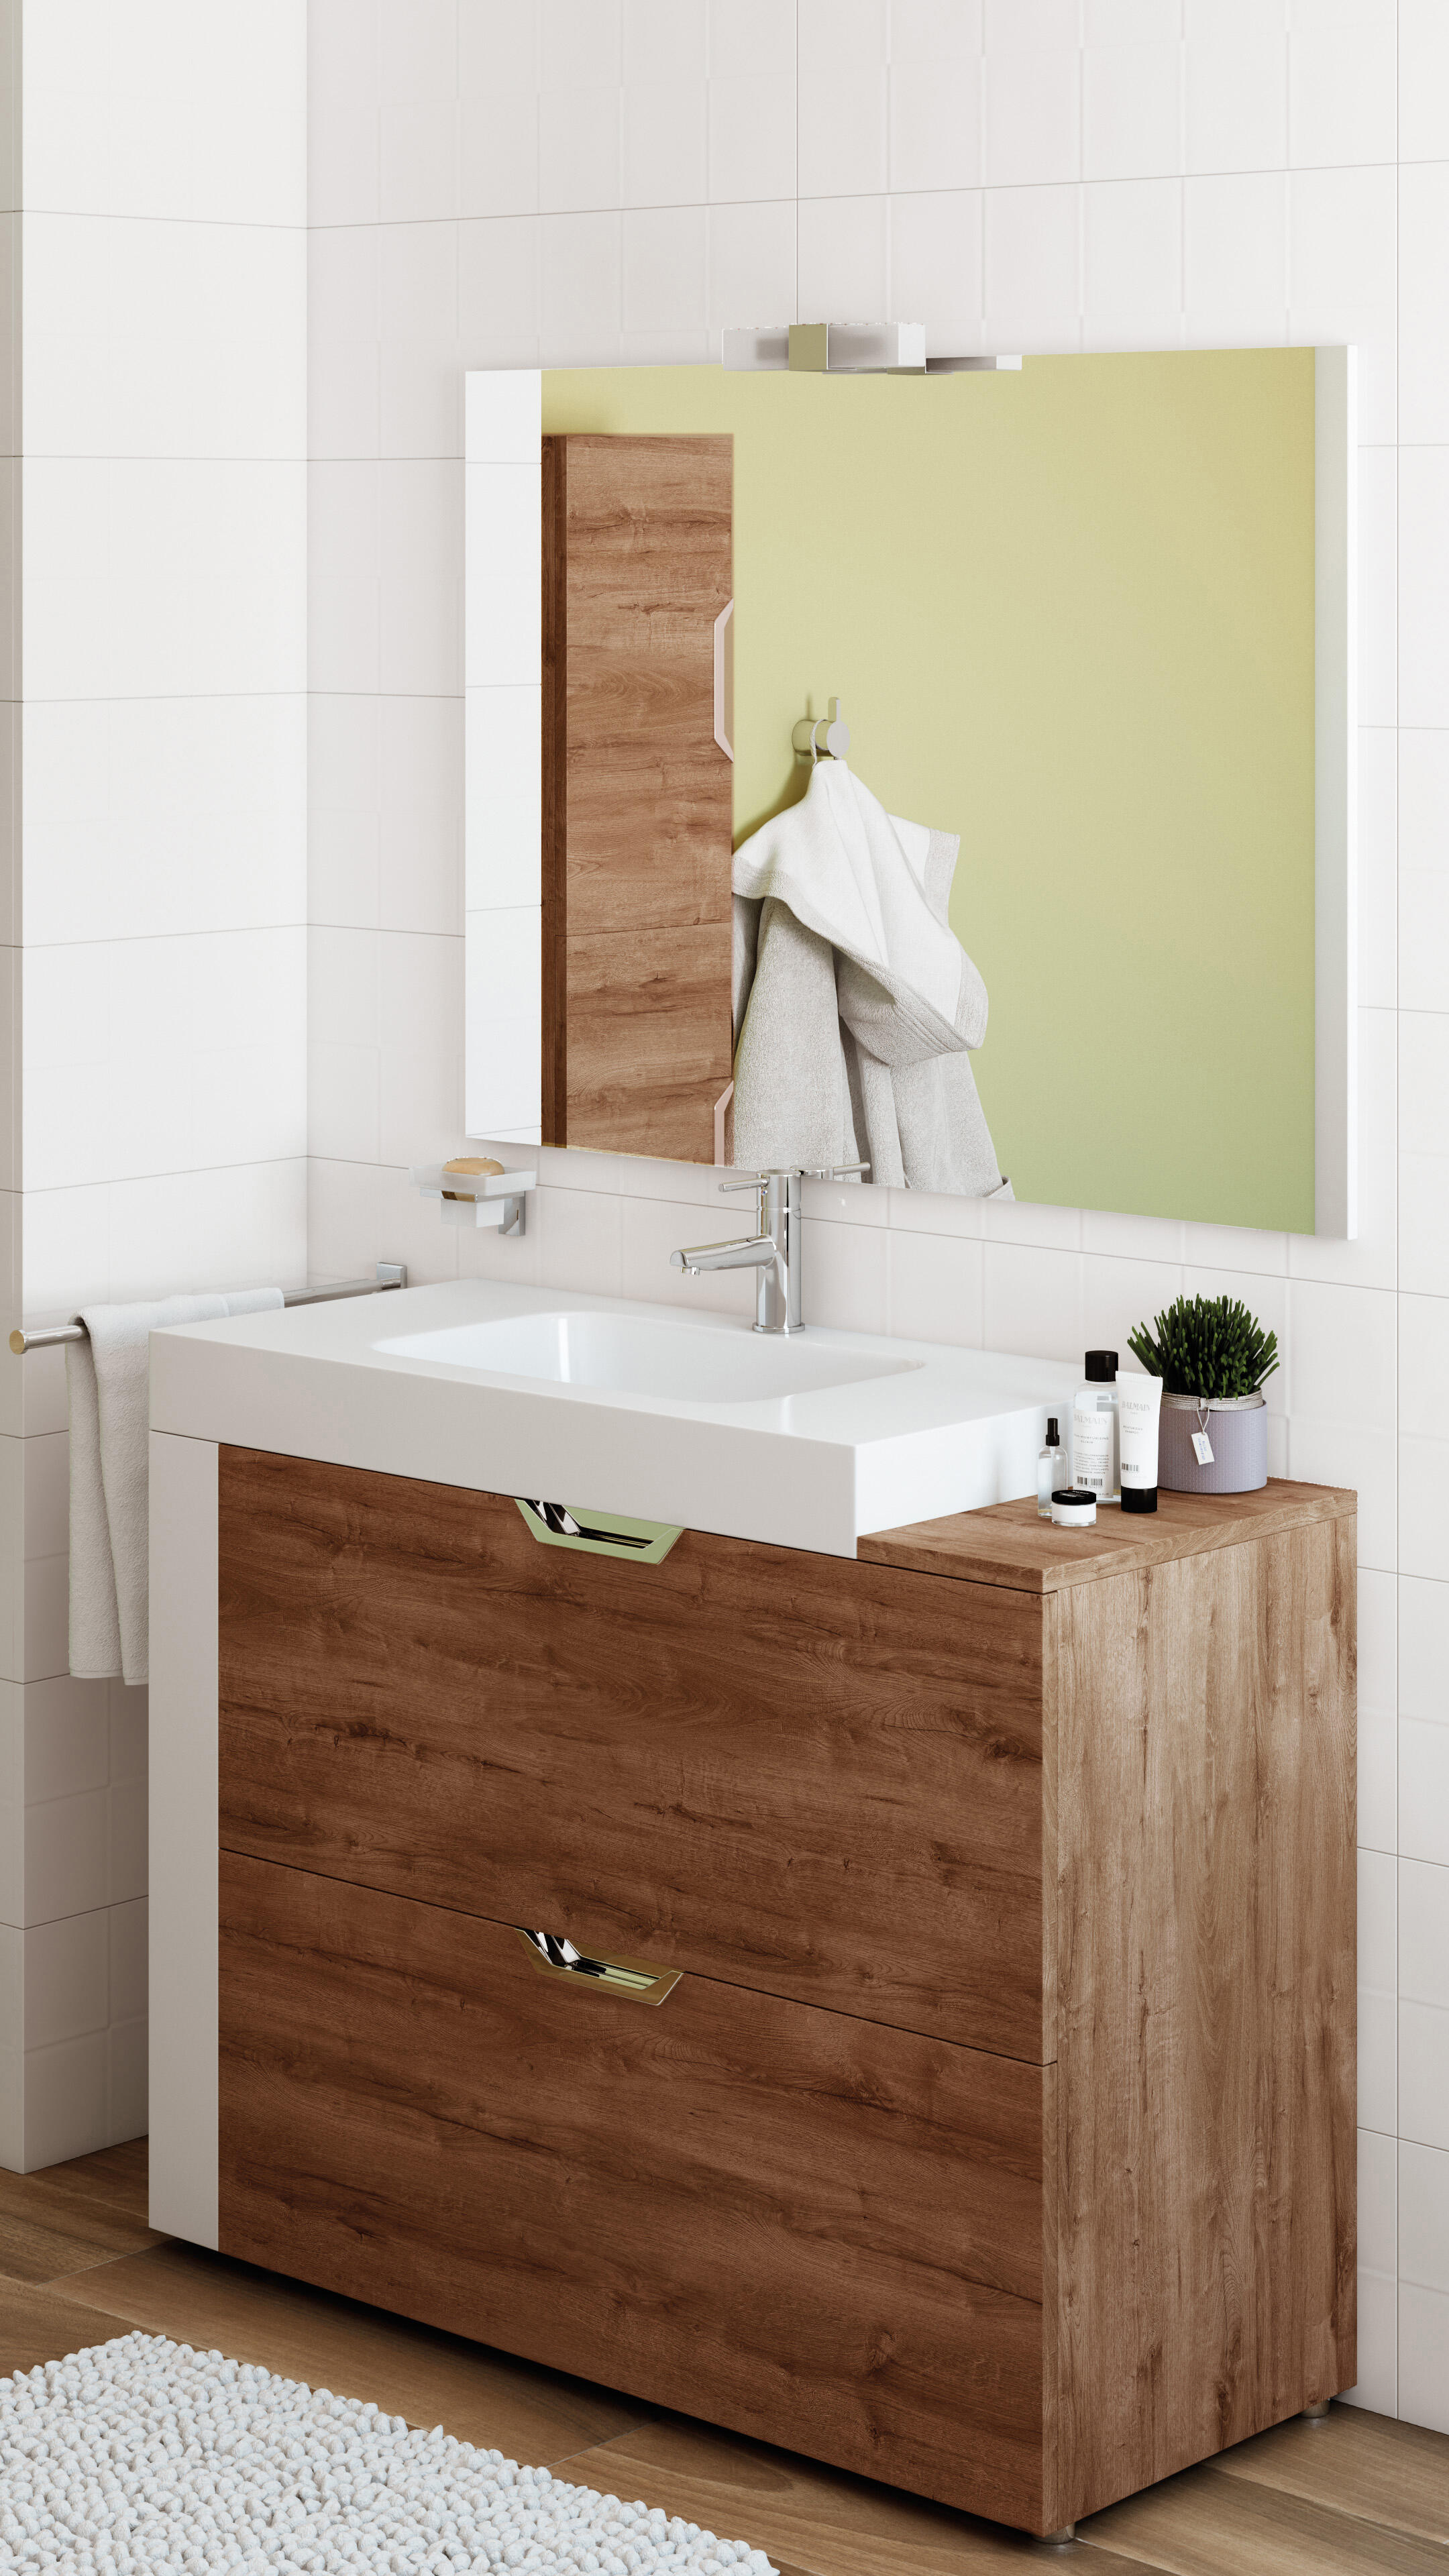 Cava jazz Red de comunicacion Mueble de baño con lavabo Moode marrón chocolate 110x48 cm | Leroy Merlin